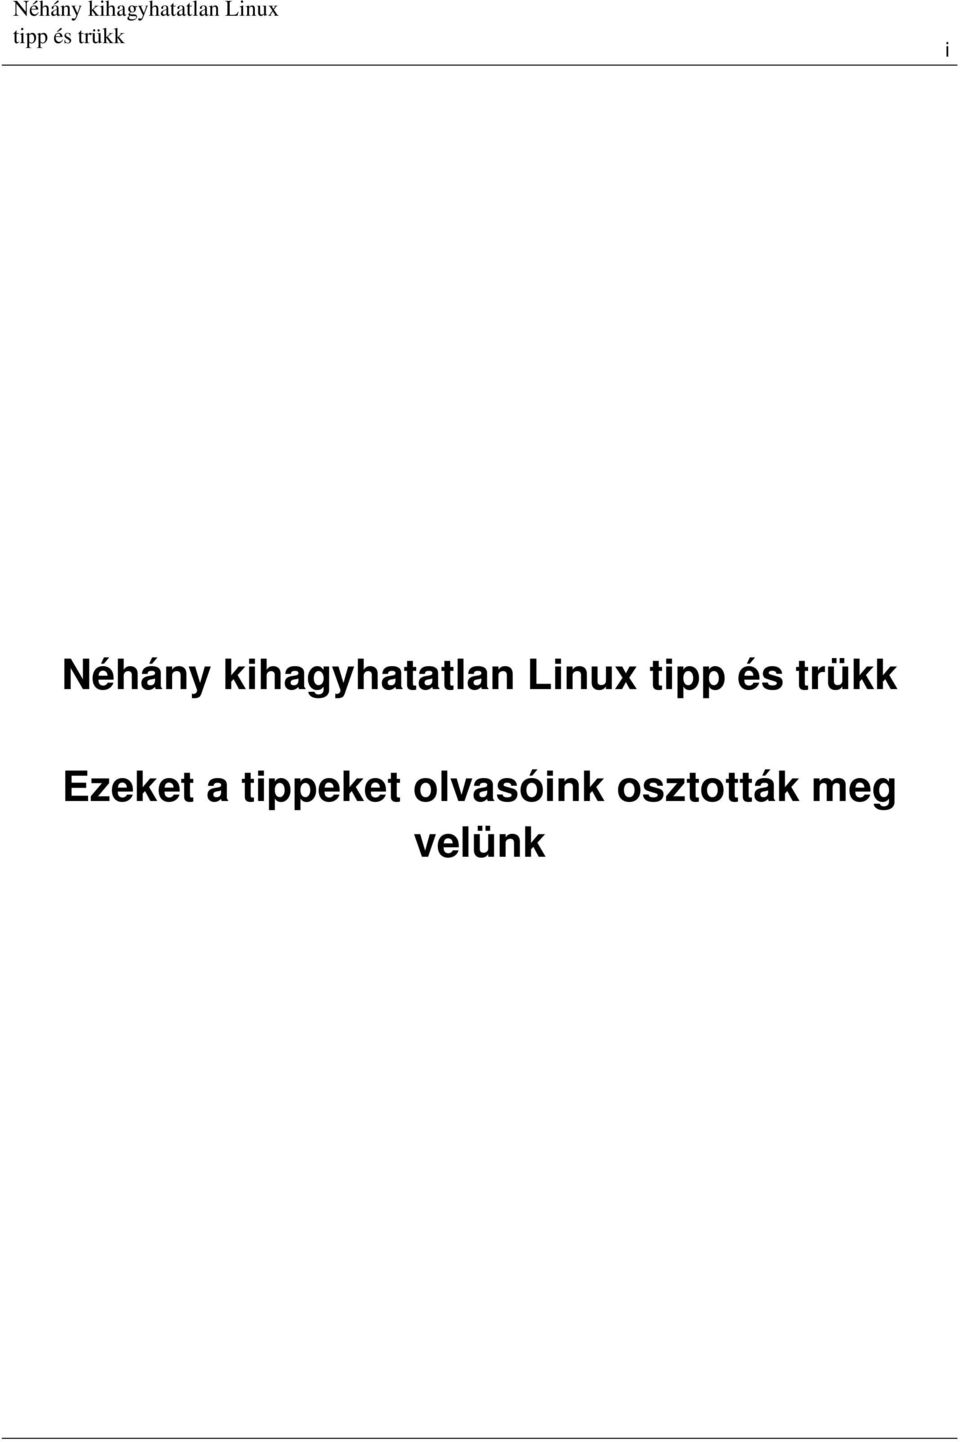 Linux Ezeket a